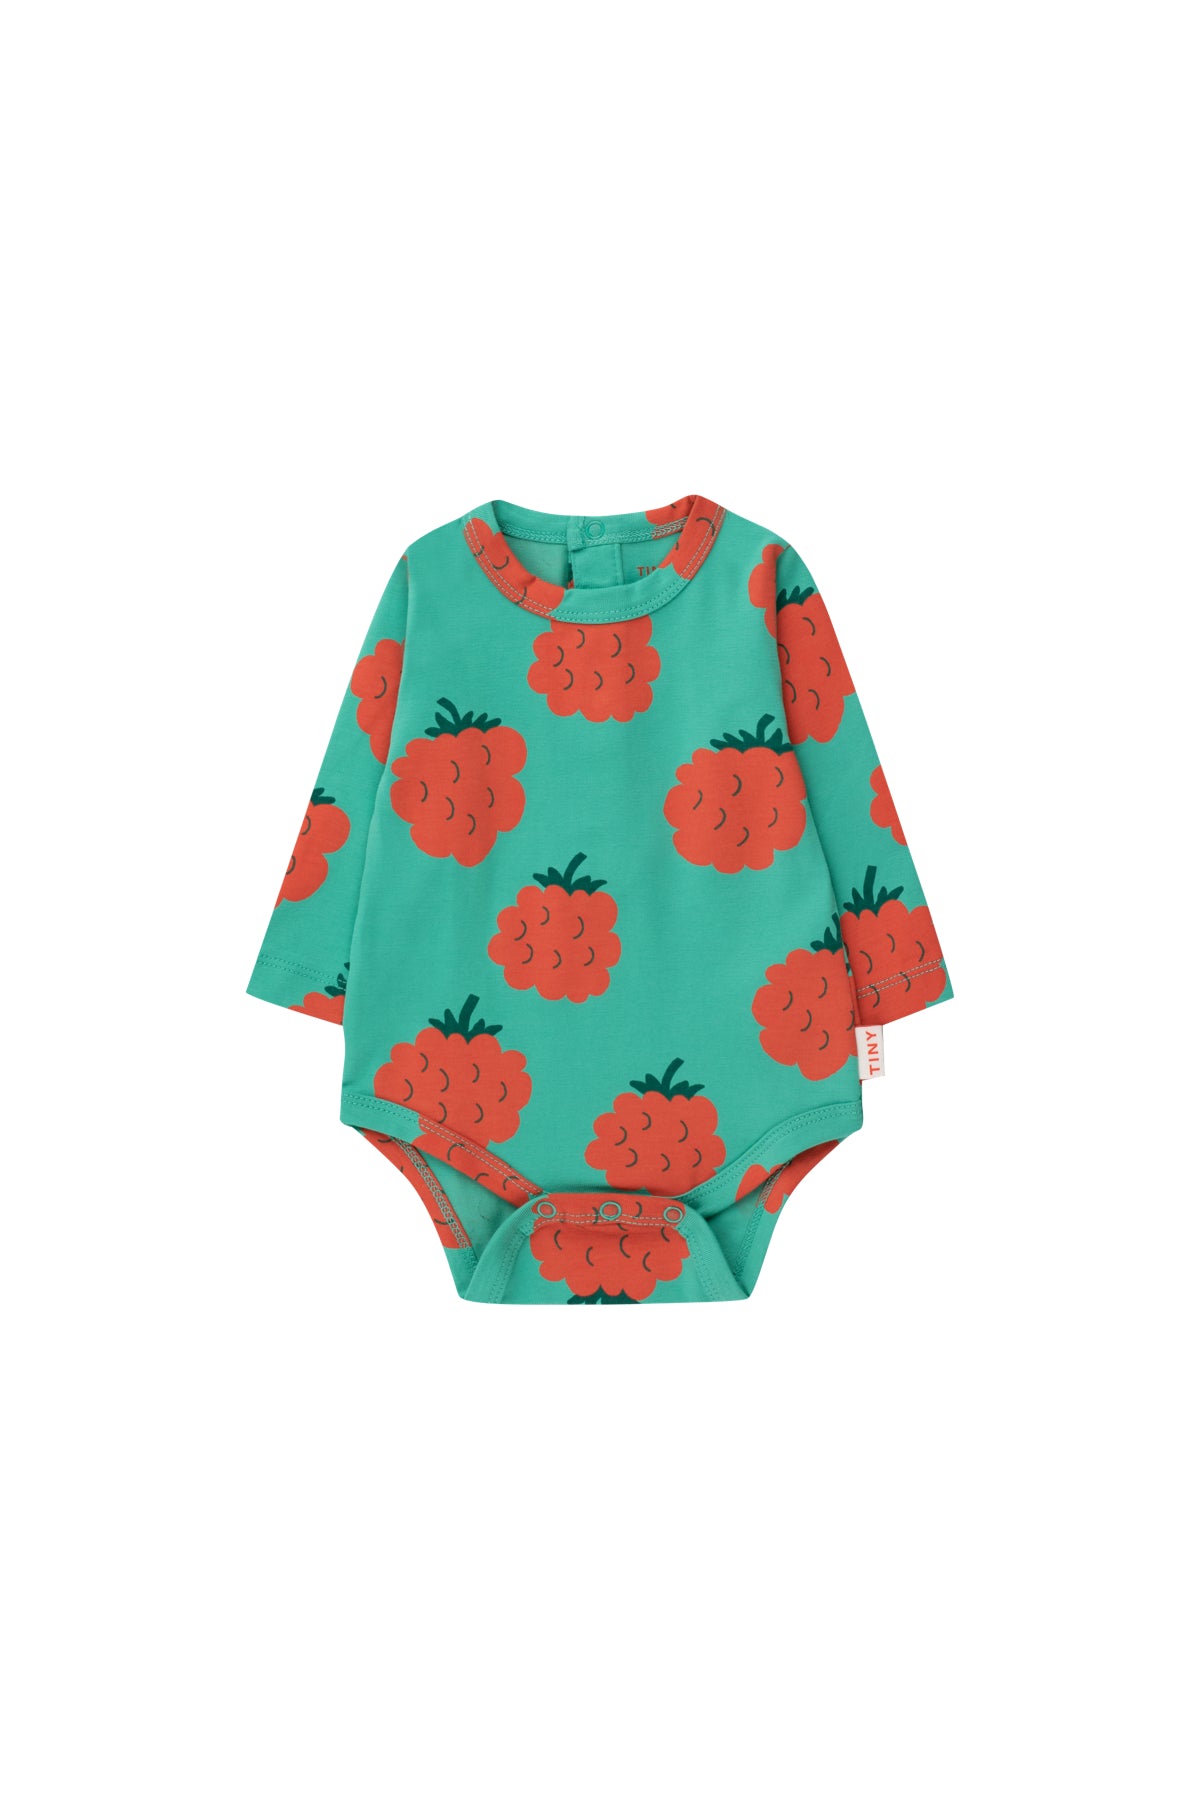 Tinycottons Raspberries Baby Bodysuit